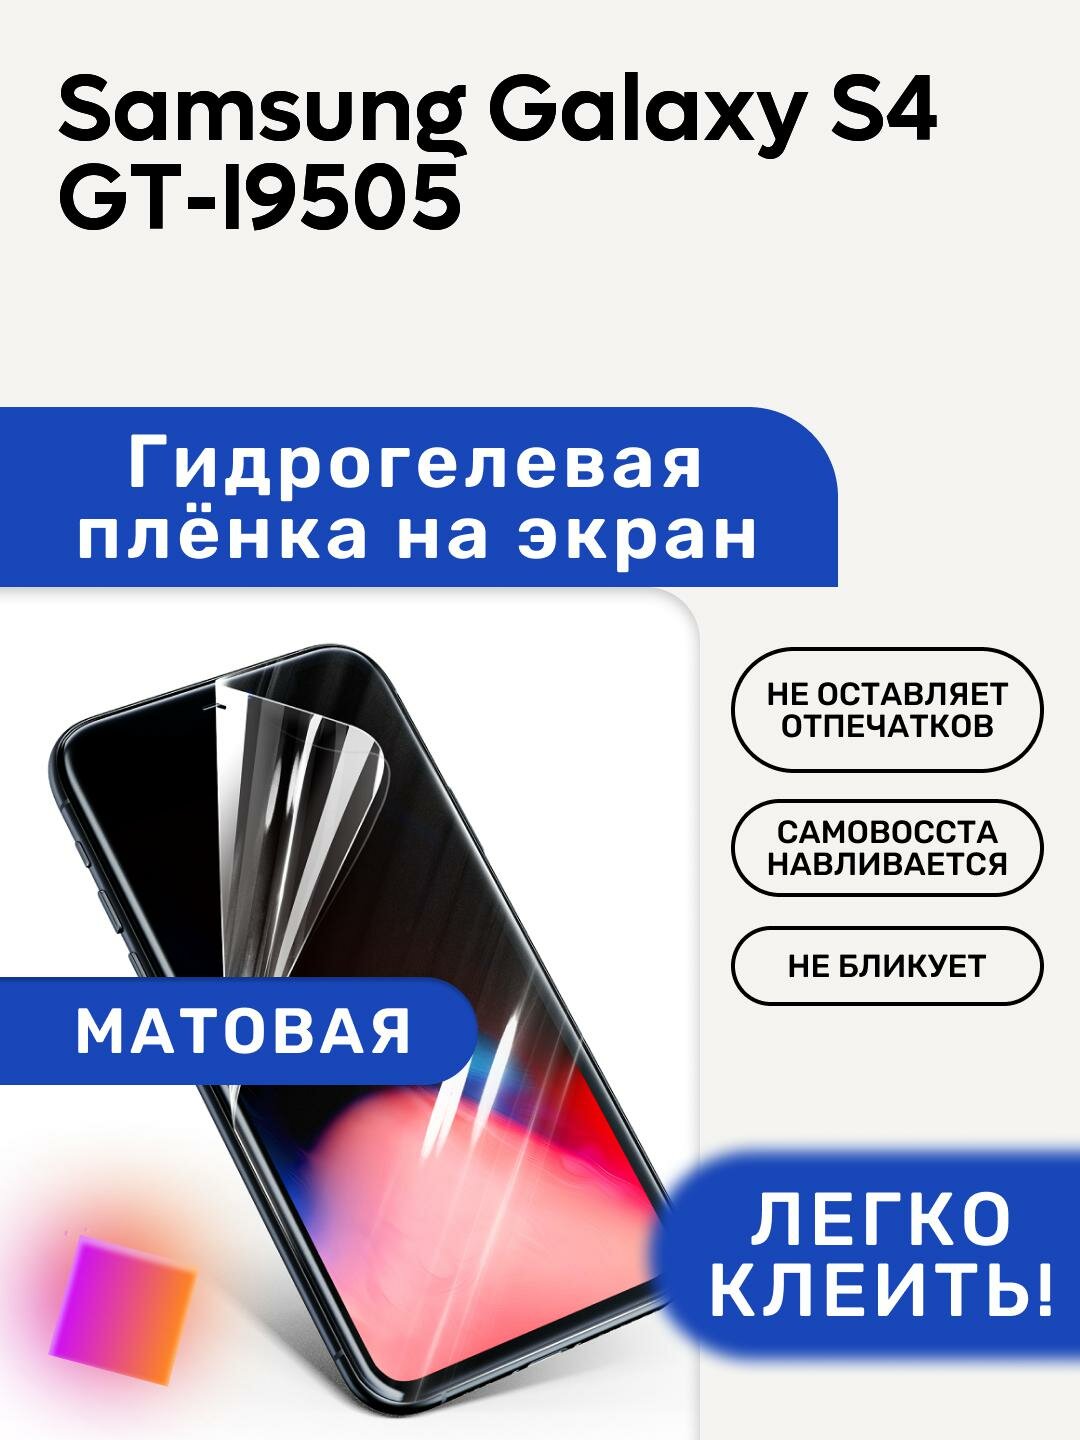 Матовая Гидрогелевая плёнка, полиуретановая, защита экрана Samsung Galaxy S4 GT-I9505